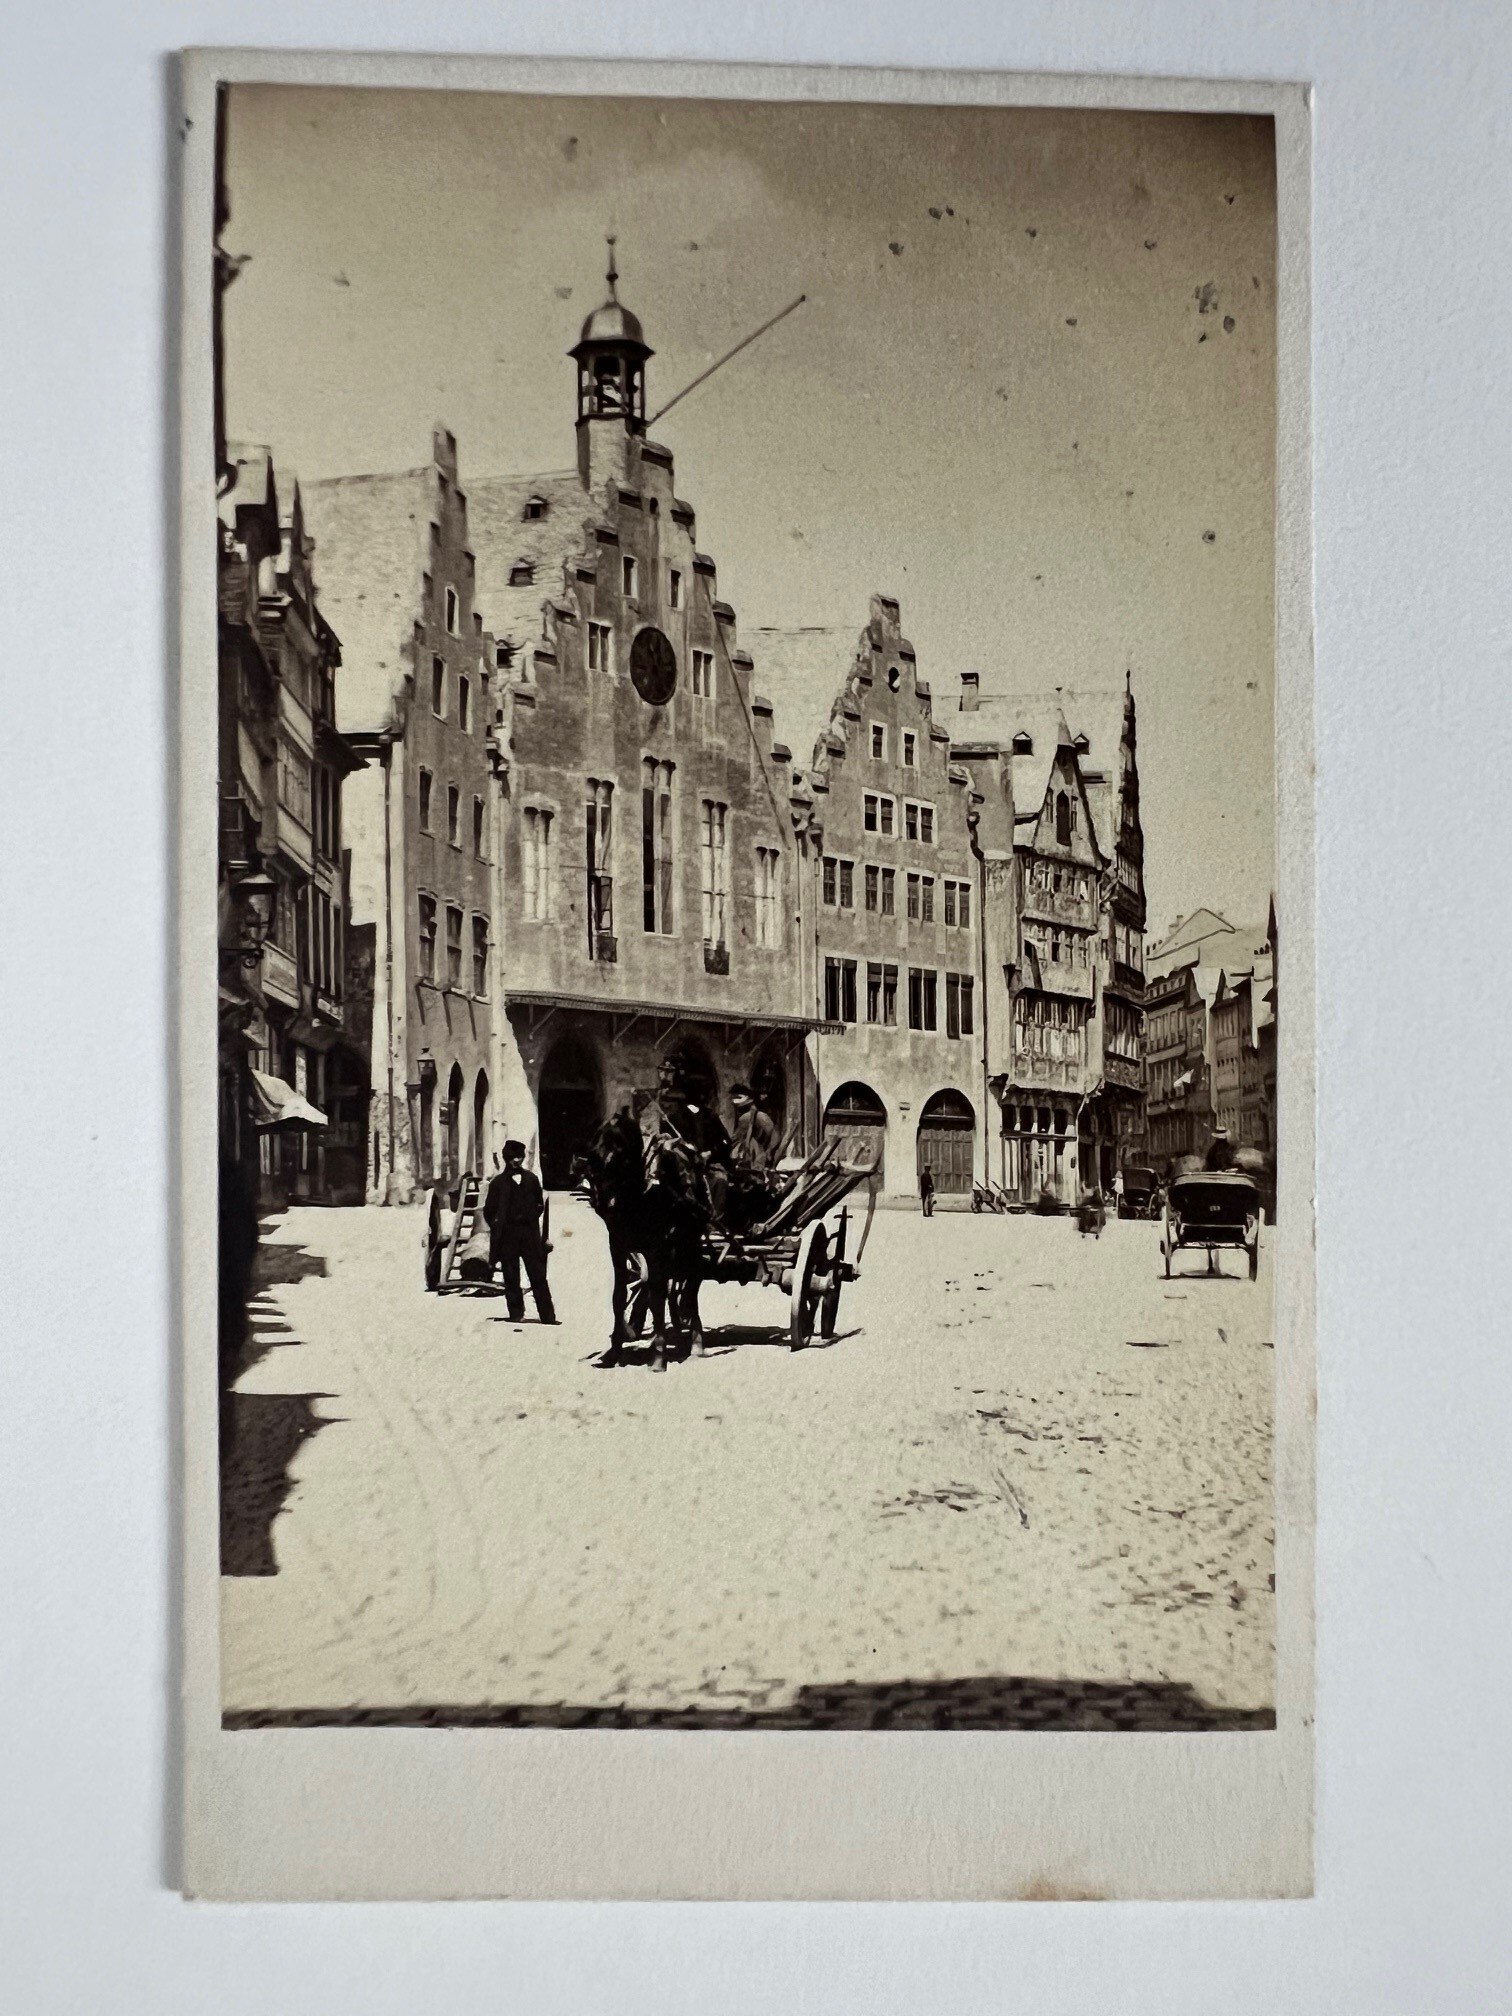 CdV, Theodor Creifelds, Frankfurt, Nr. 274, Römer in Frankfurt, klein, ca. 1870. (Taunus-Rhein-Main - Regionalgeschichtliche Sammlung Dr. Stefan Naas CC BY-NC-SA)